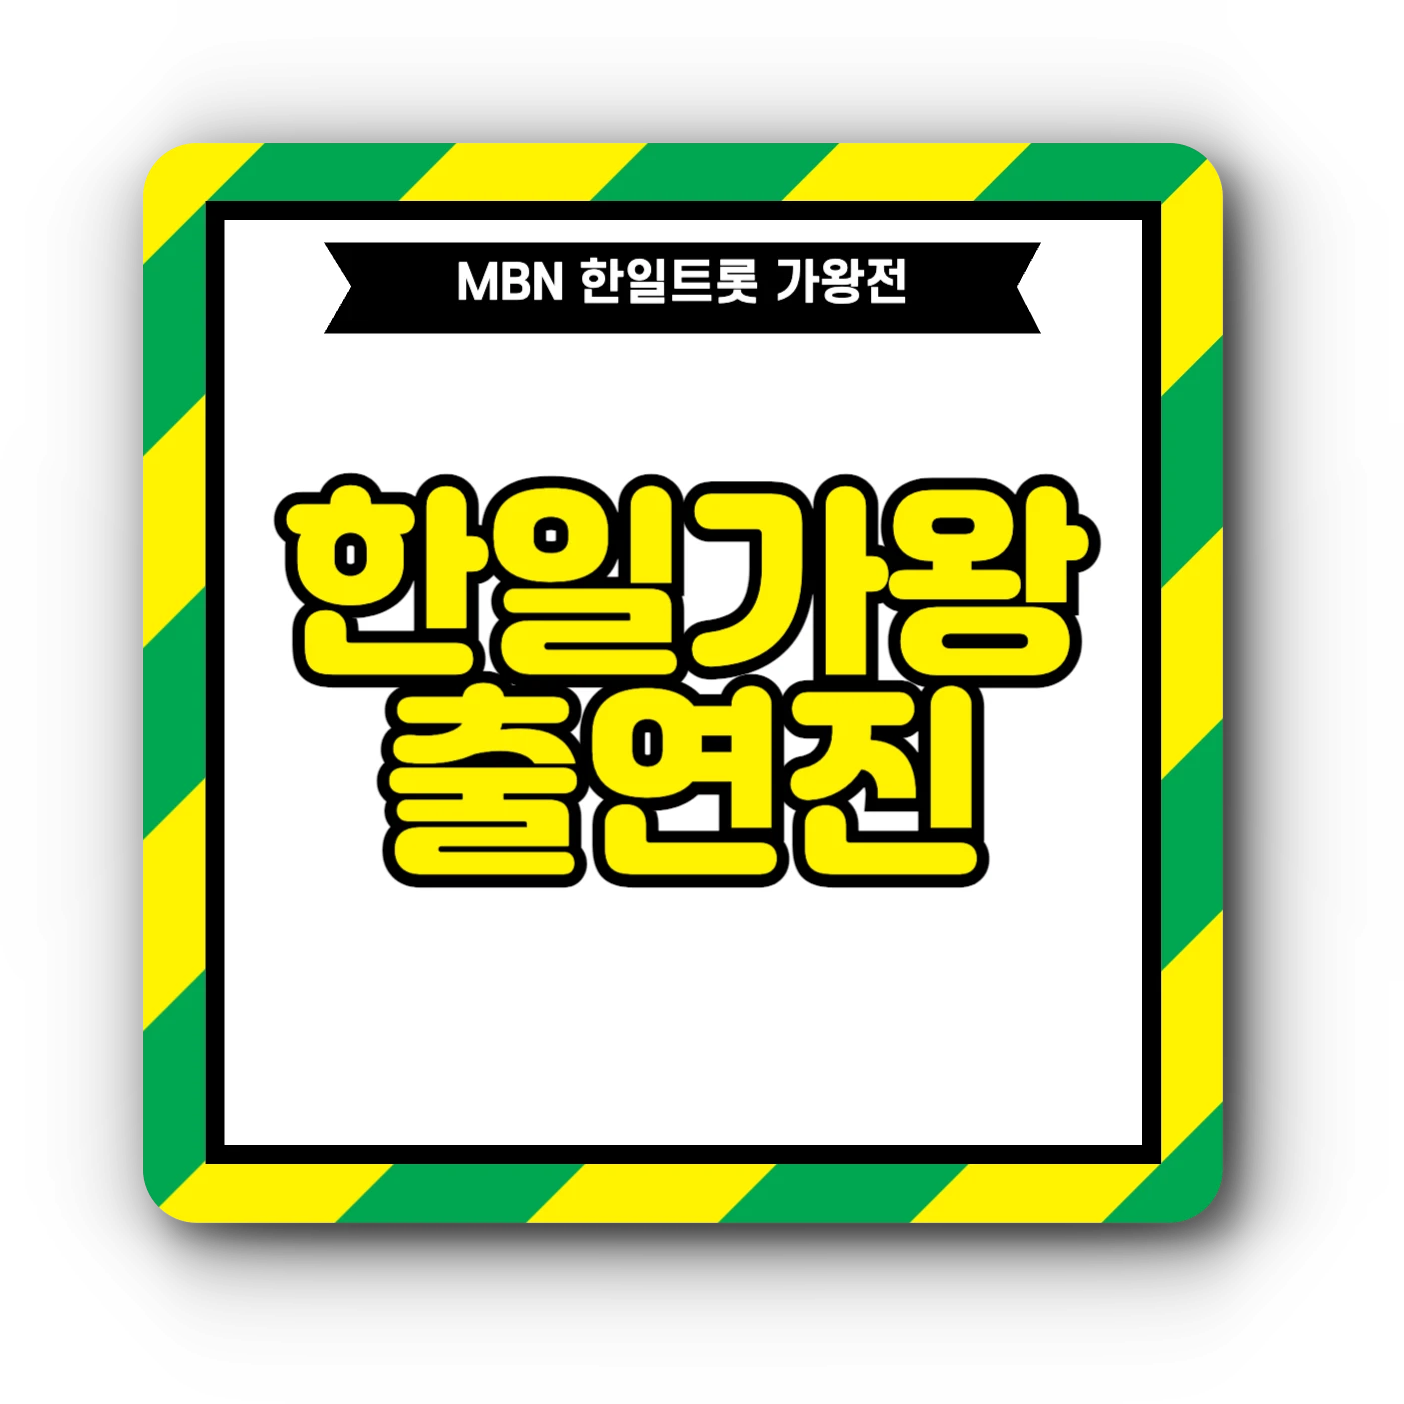 한일가왕전 출연진 : 현역가왕, 트롯걸 인 재팬  TOP7 정보